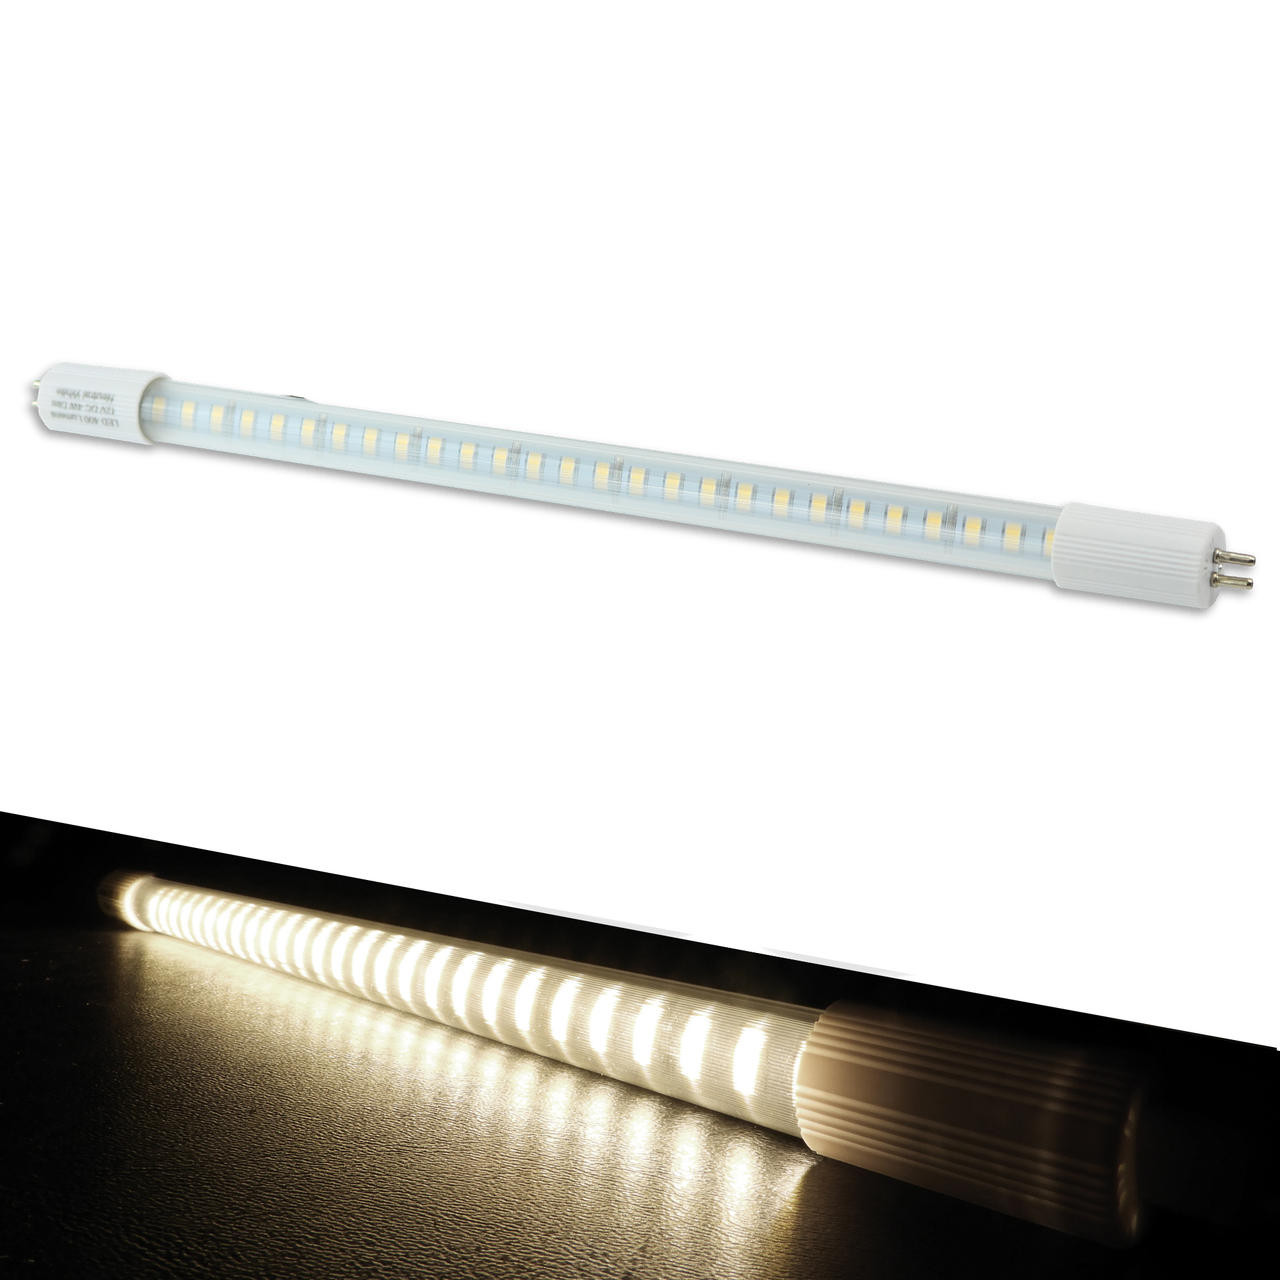 klynke Genbruge Misbruge Leisure LED RV Light Bulb LED T5, 12" Florescent Tube Replacement, 320  Lumen Warm White 3500K